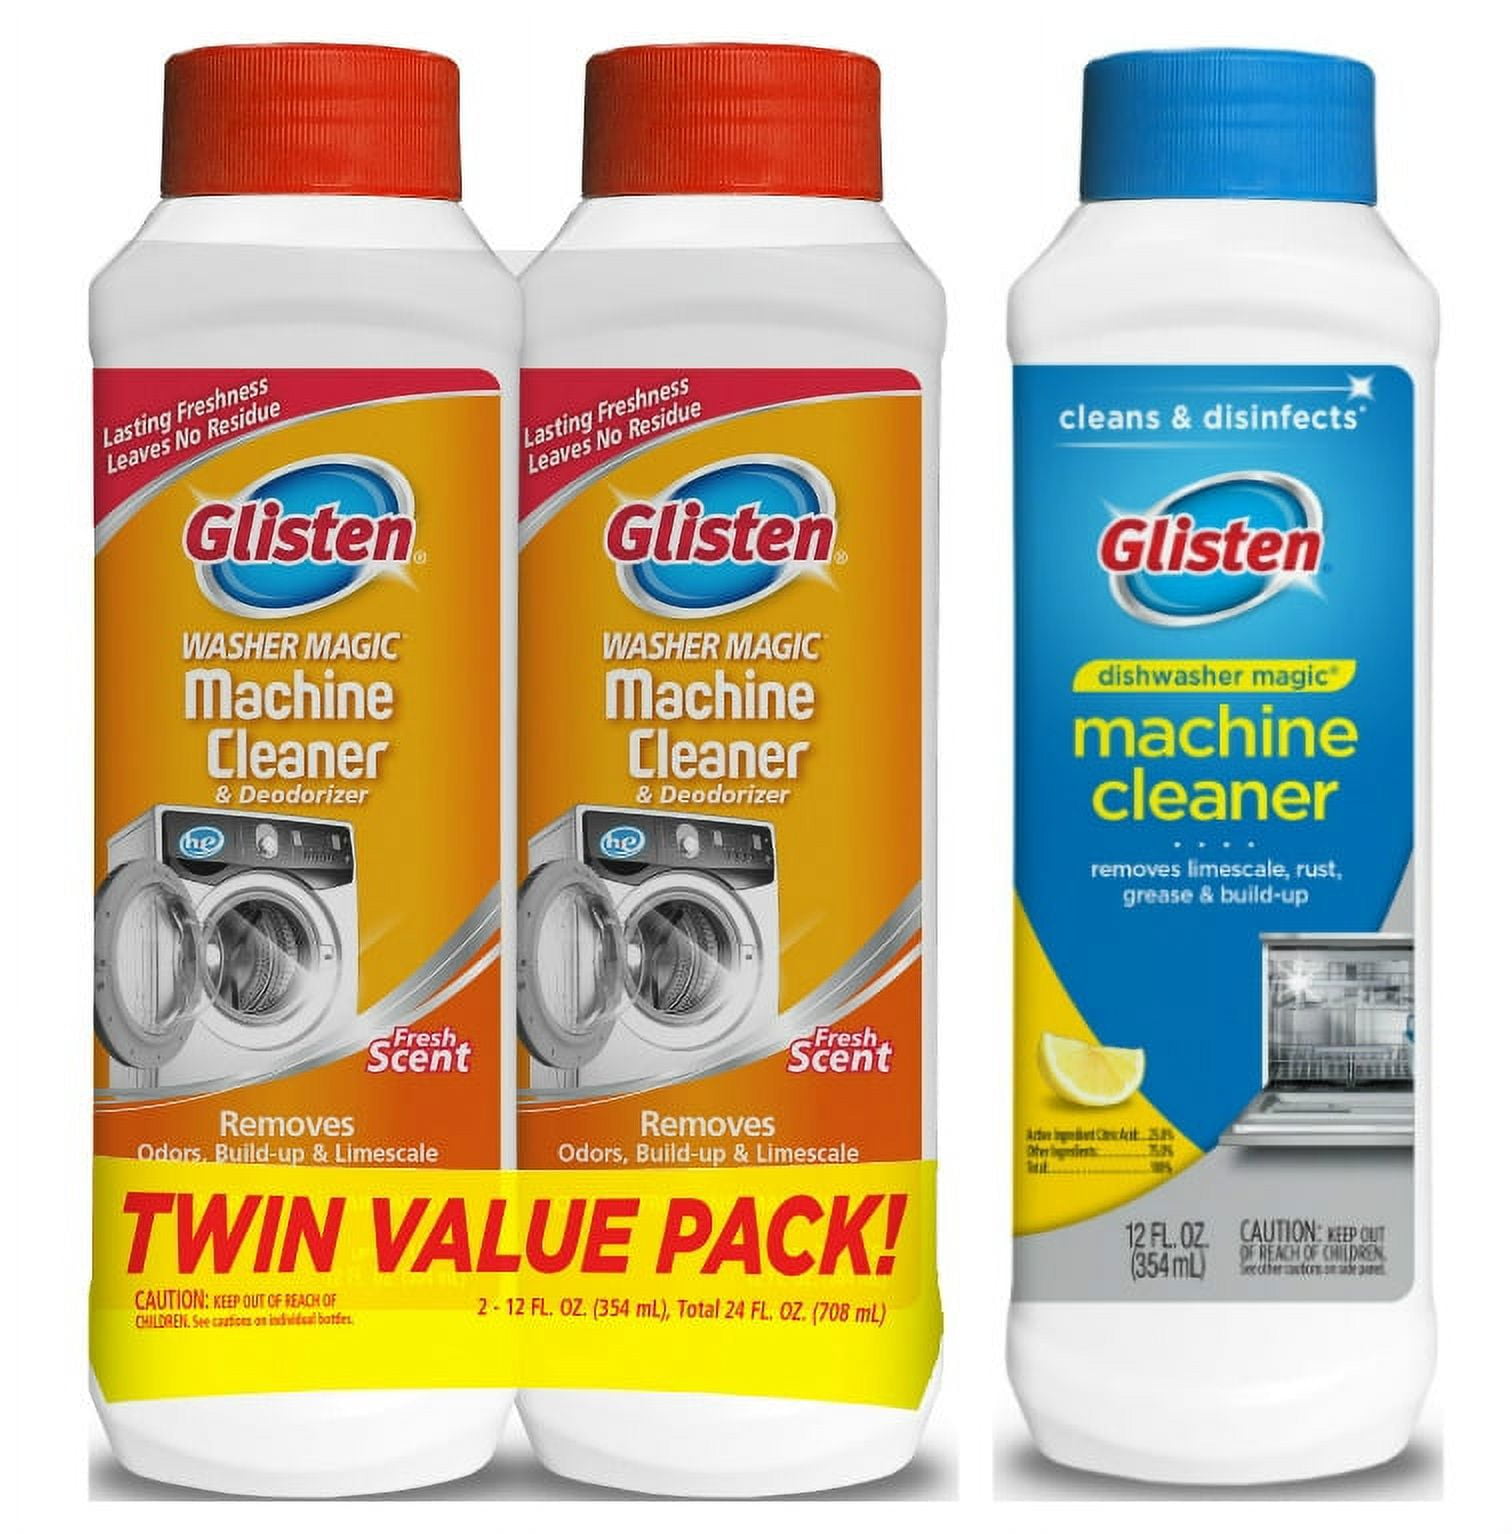 Glisten® Washing Machine Cleaner